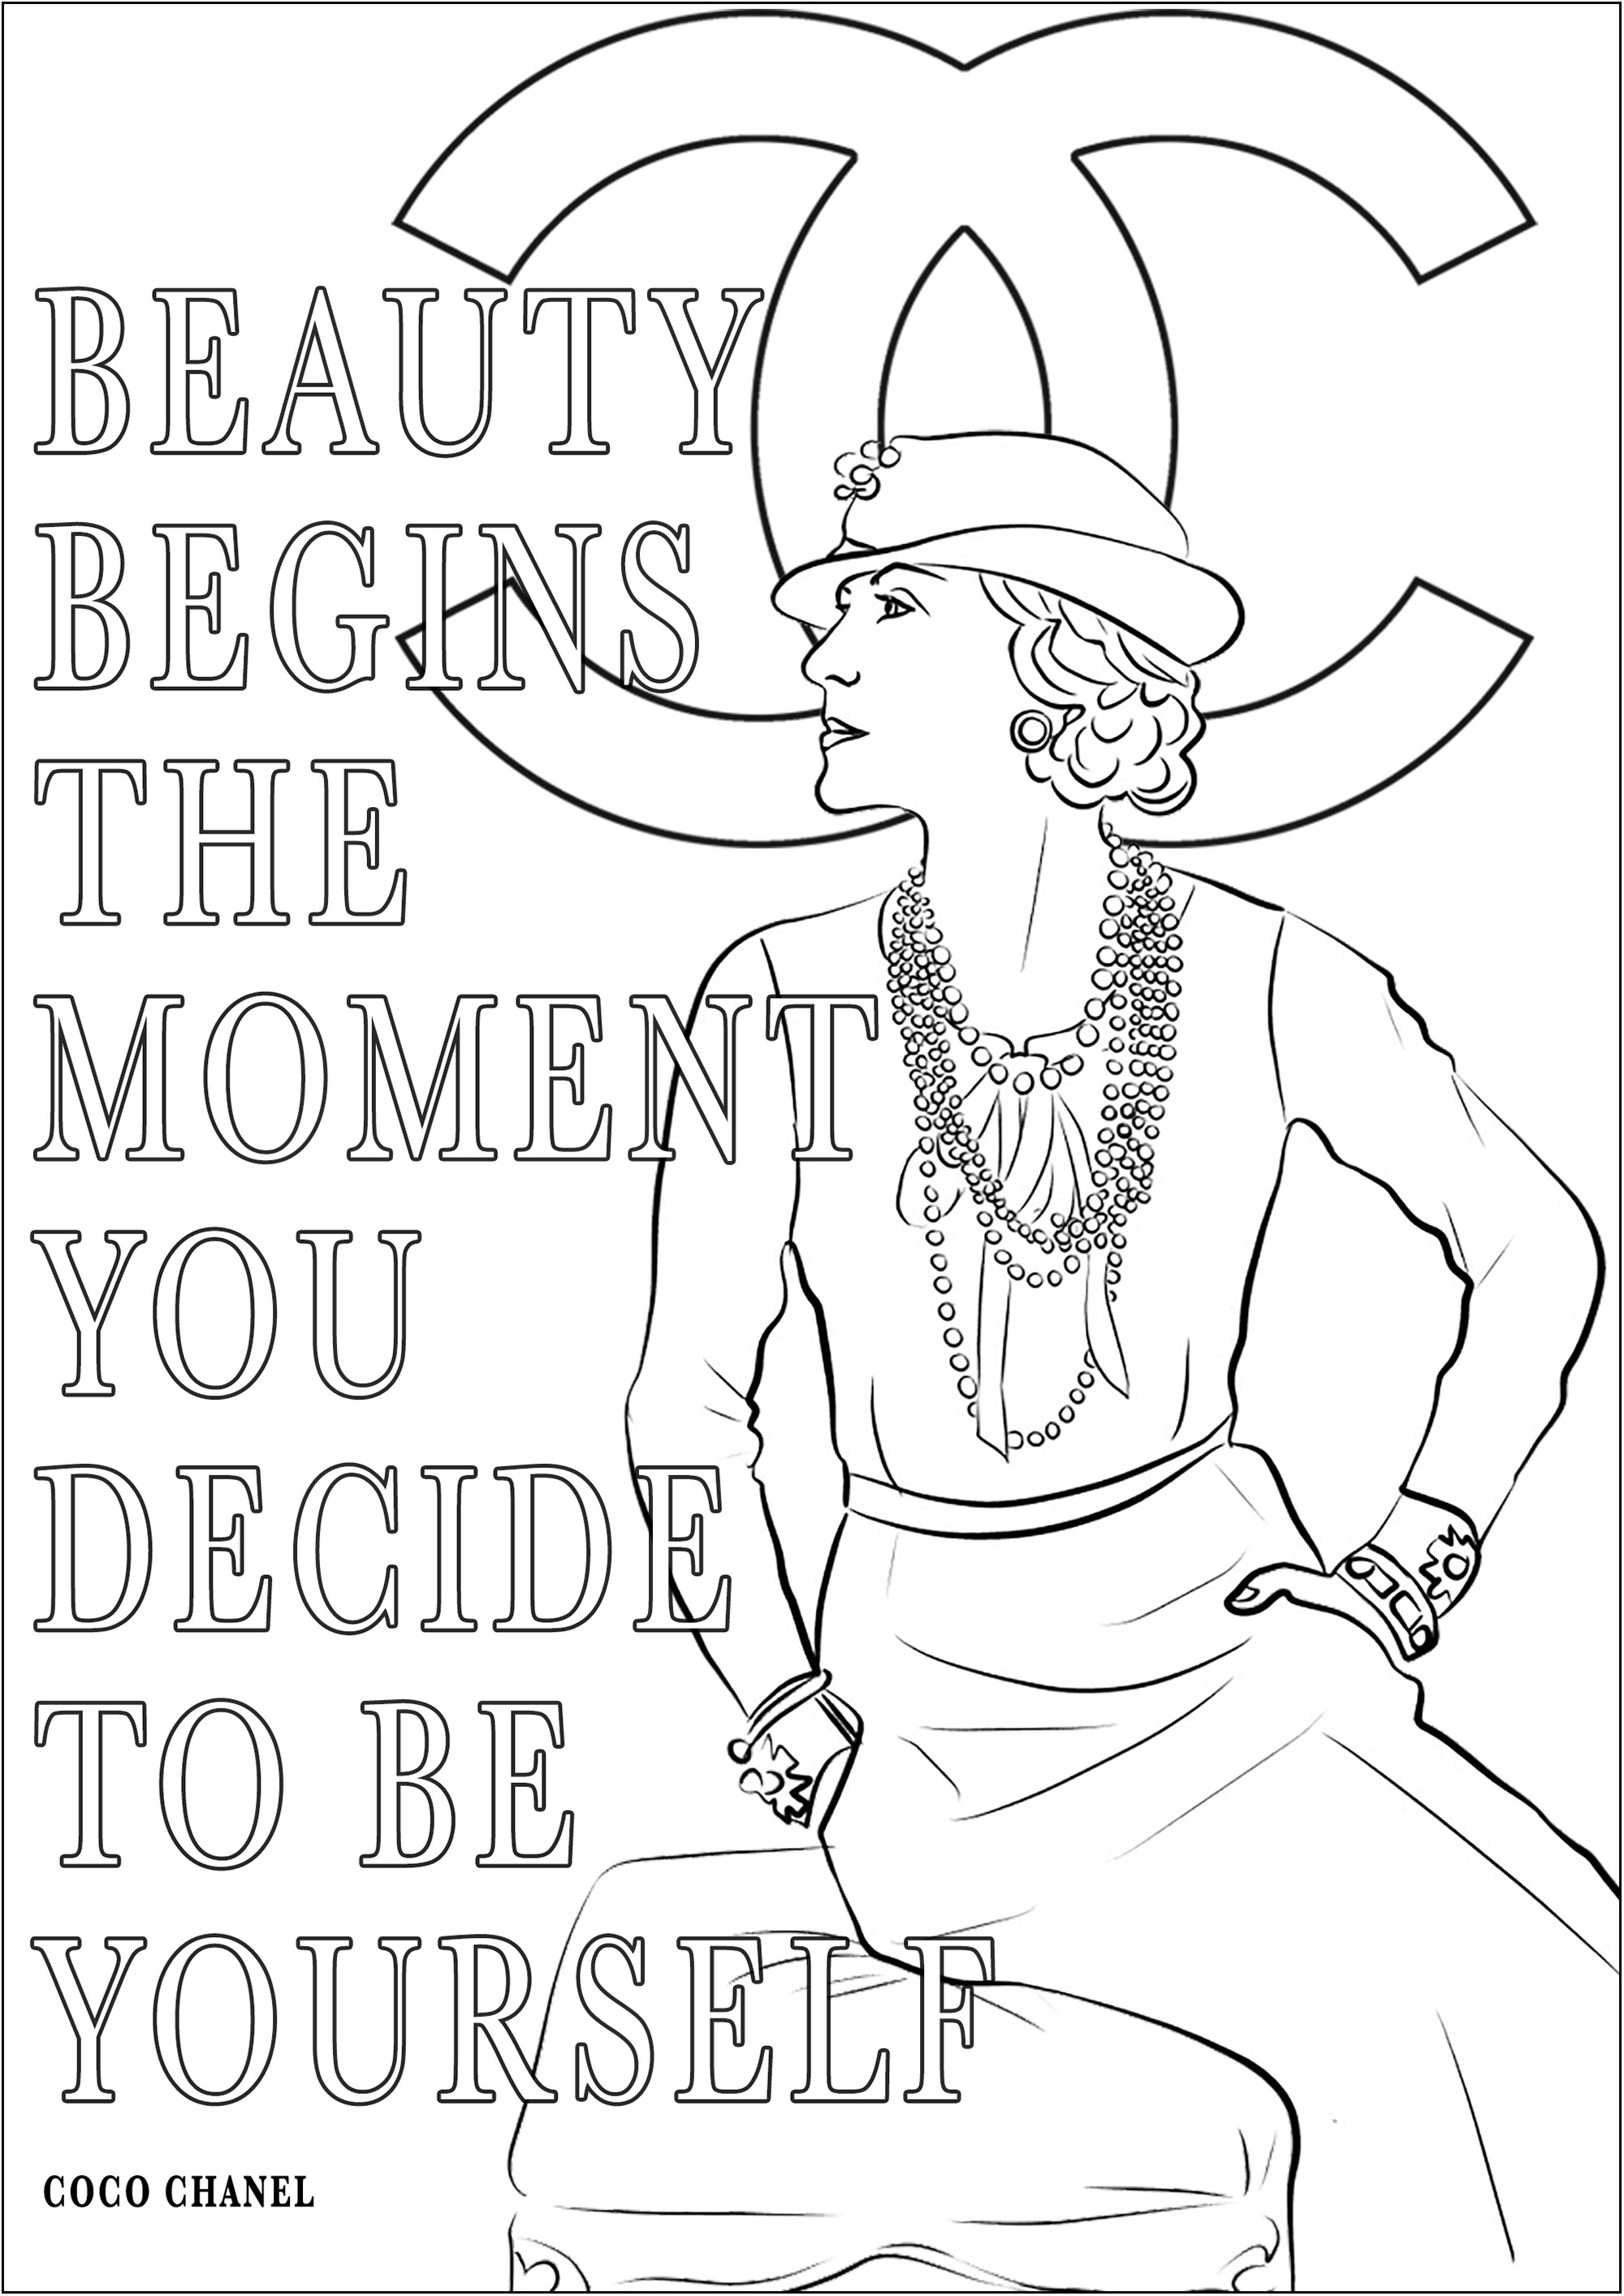 Coco Chanel y su cita 'La belleza comienza en el momento en que decides ser tú misma'. Significa 'La belleza comienza en el momento en que decides ser tú misma'.Coco Chanel, nacida en 1883, fue una revolucionaria diseñadora de moda francesa que transformó la industria con sus creaciones atemporales, como el famoso traje Chanel y el vestidito negro.